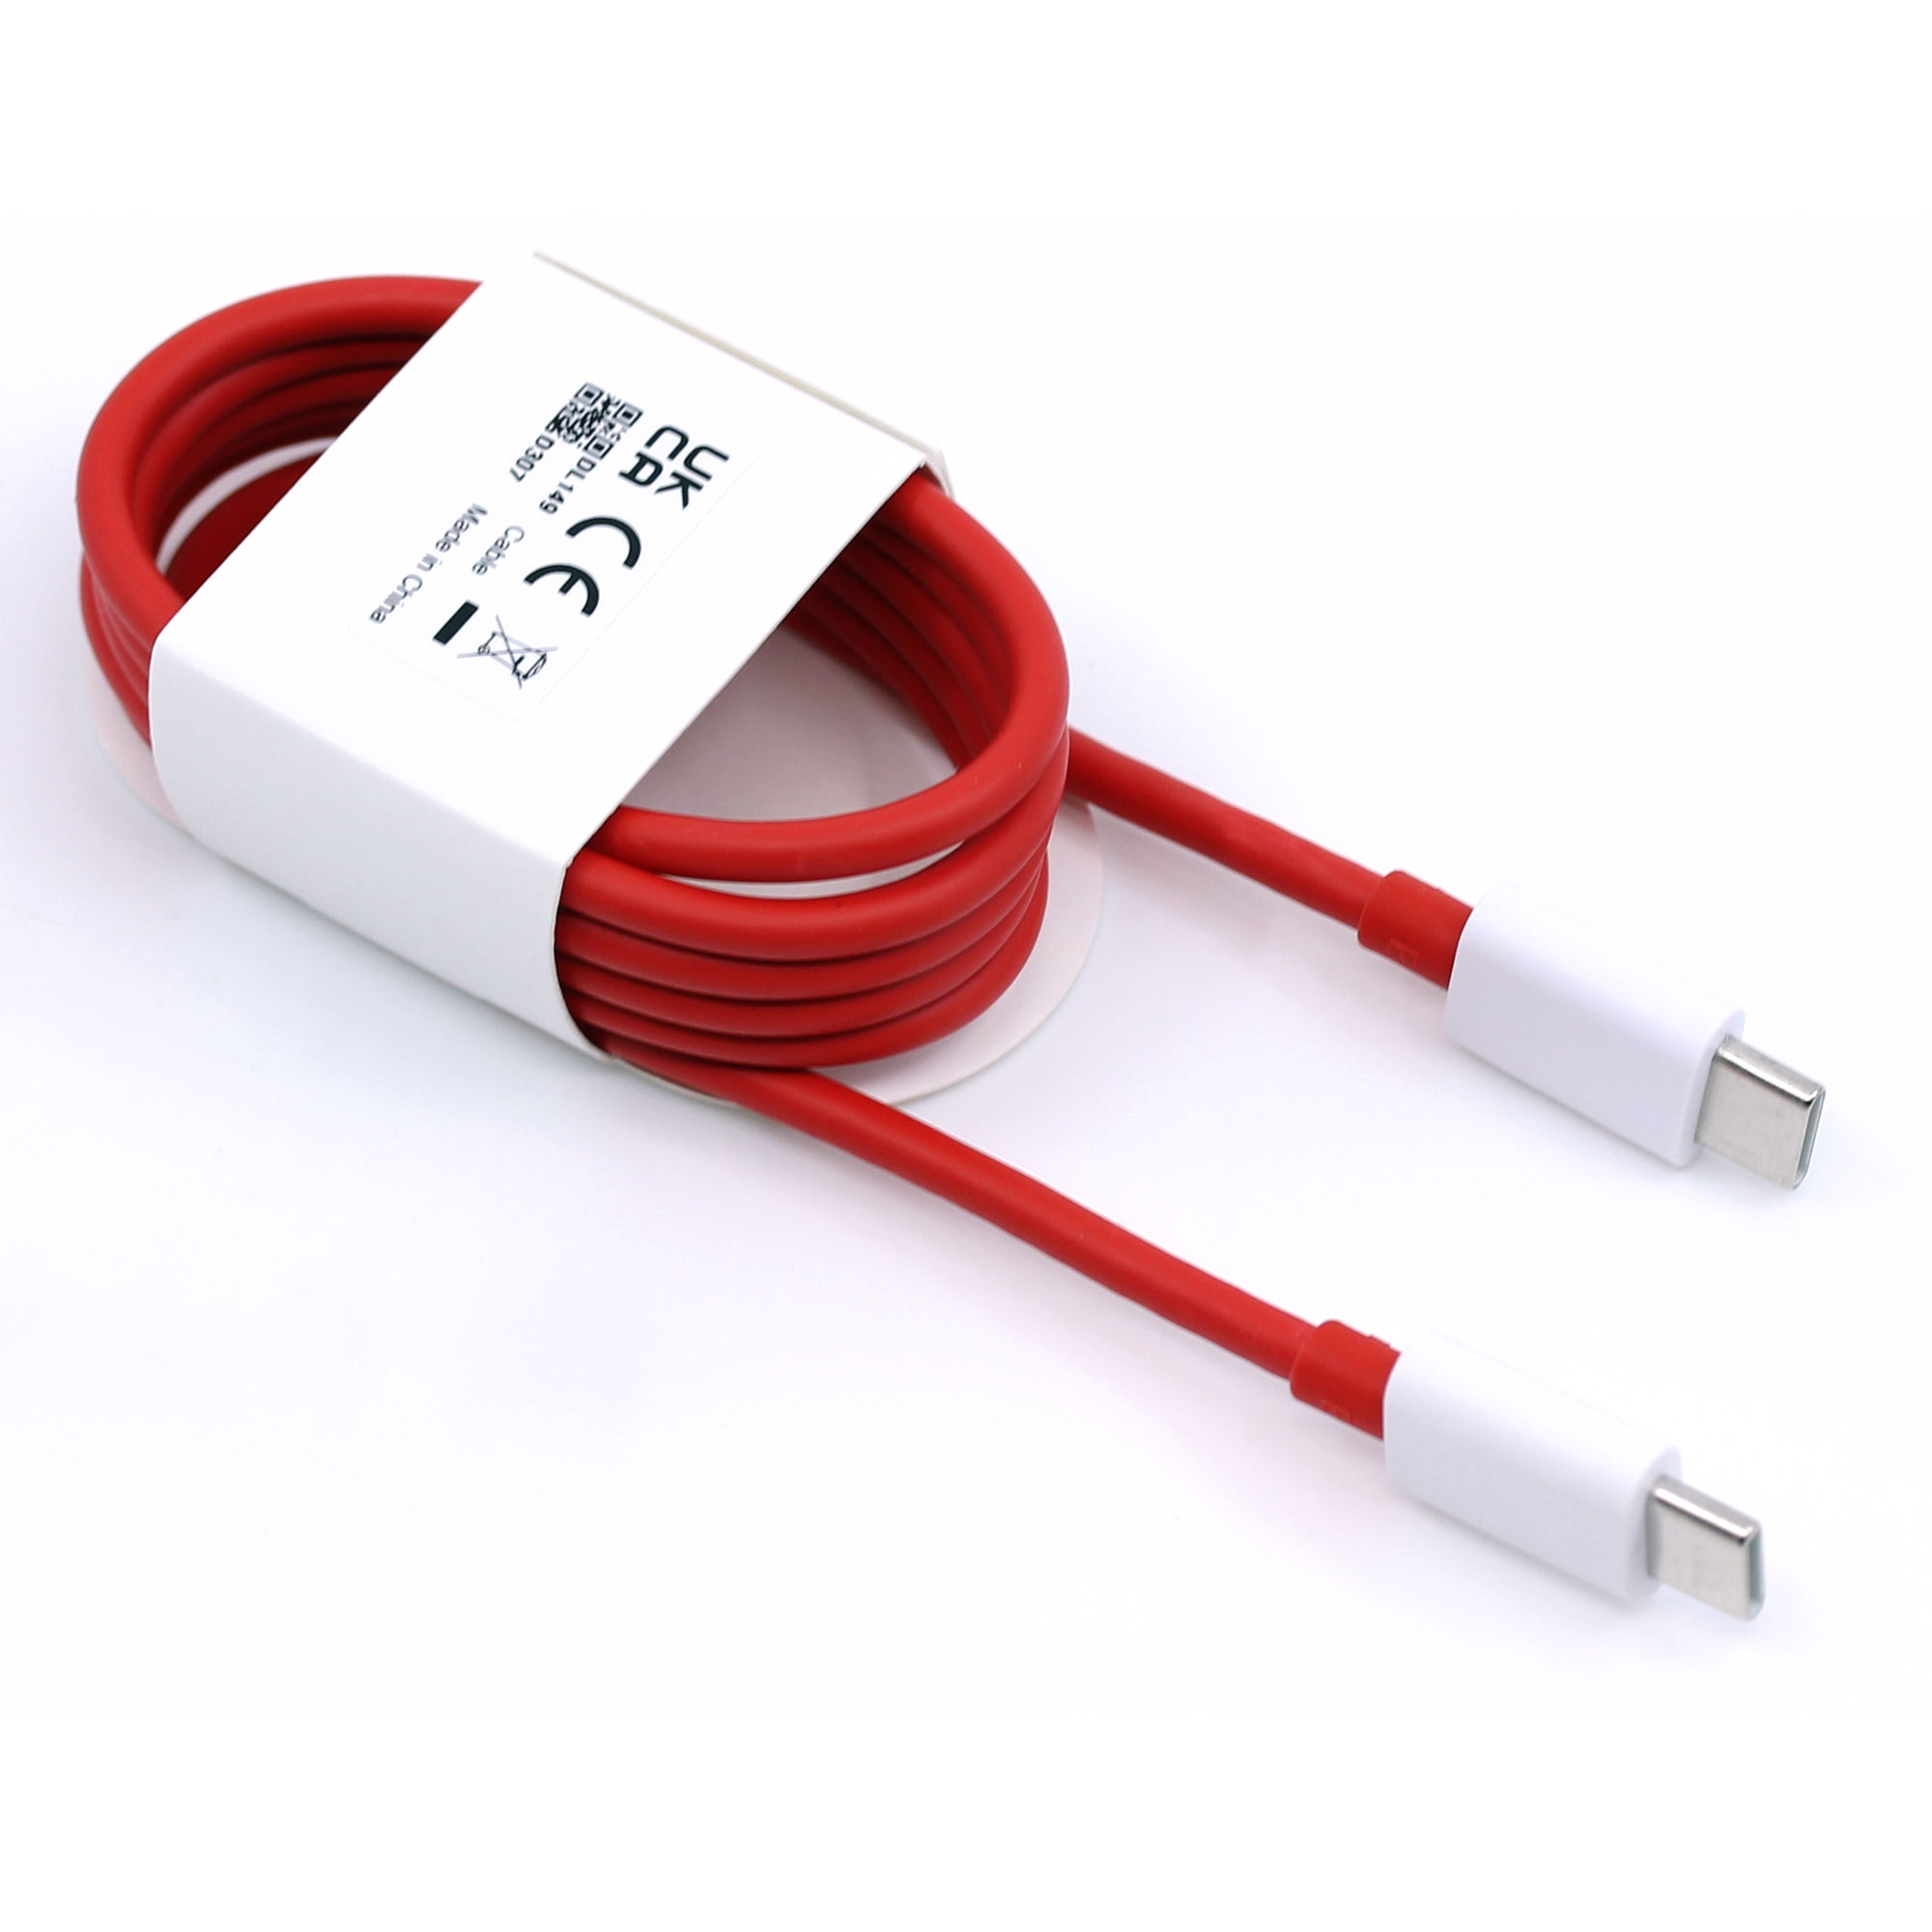 OnePlus Ladegerät 5461100248 80W USB Typ-C SUPERVOOC GaN mit Kabel weiß